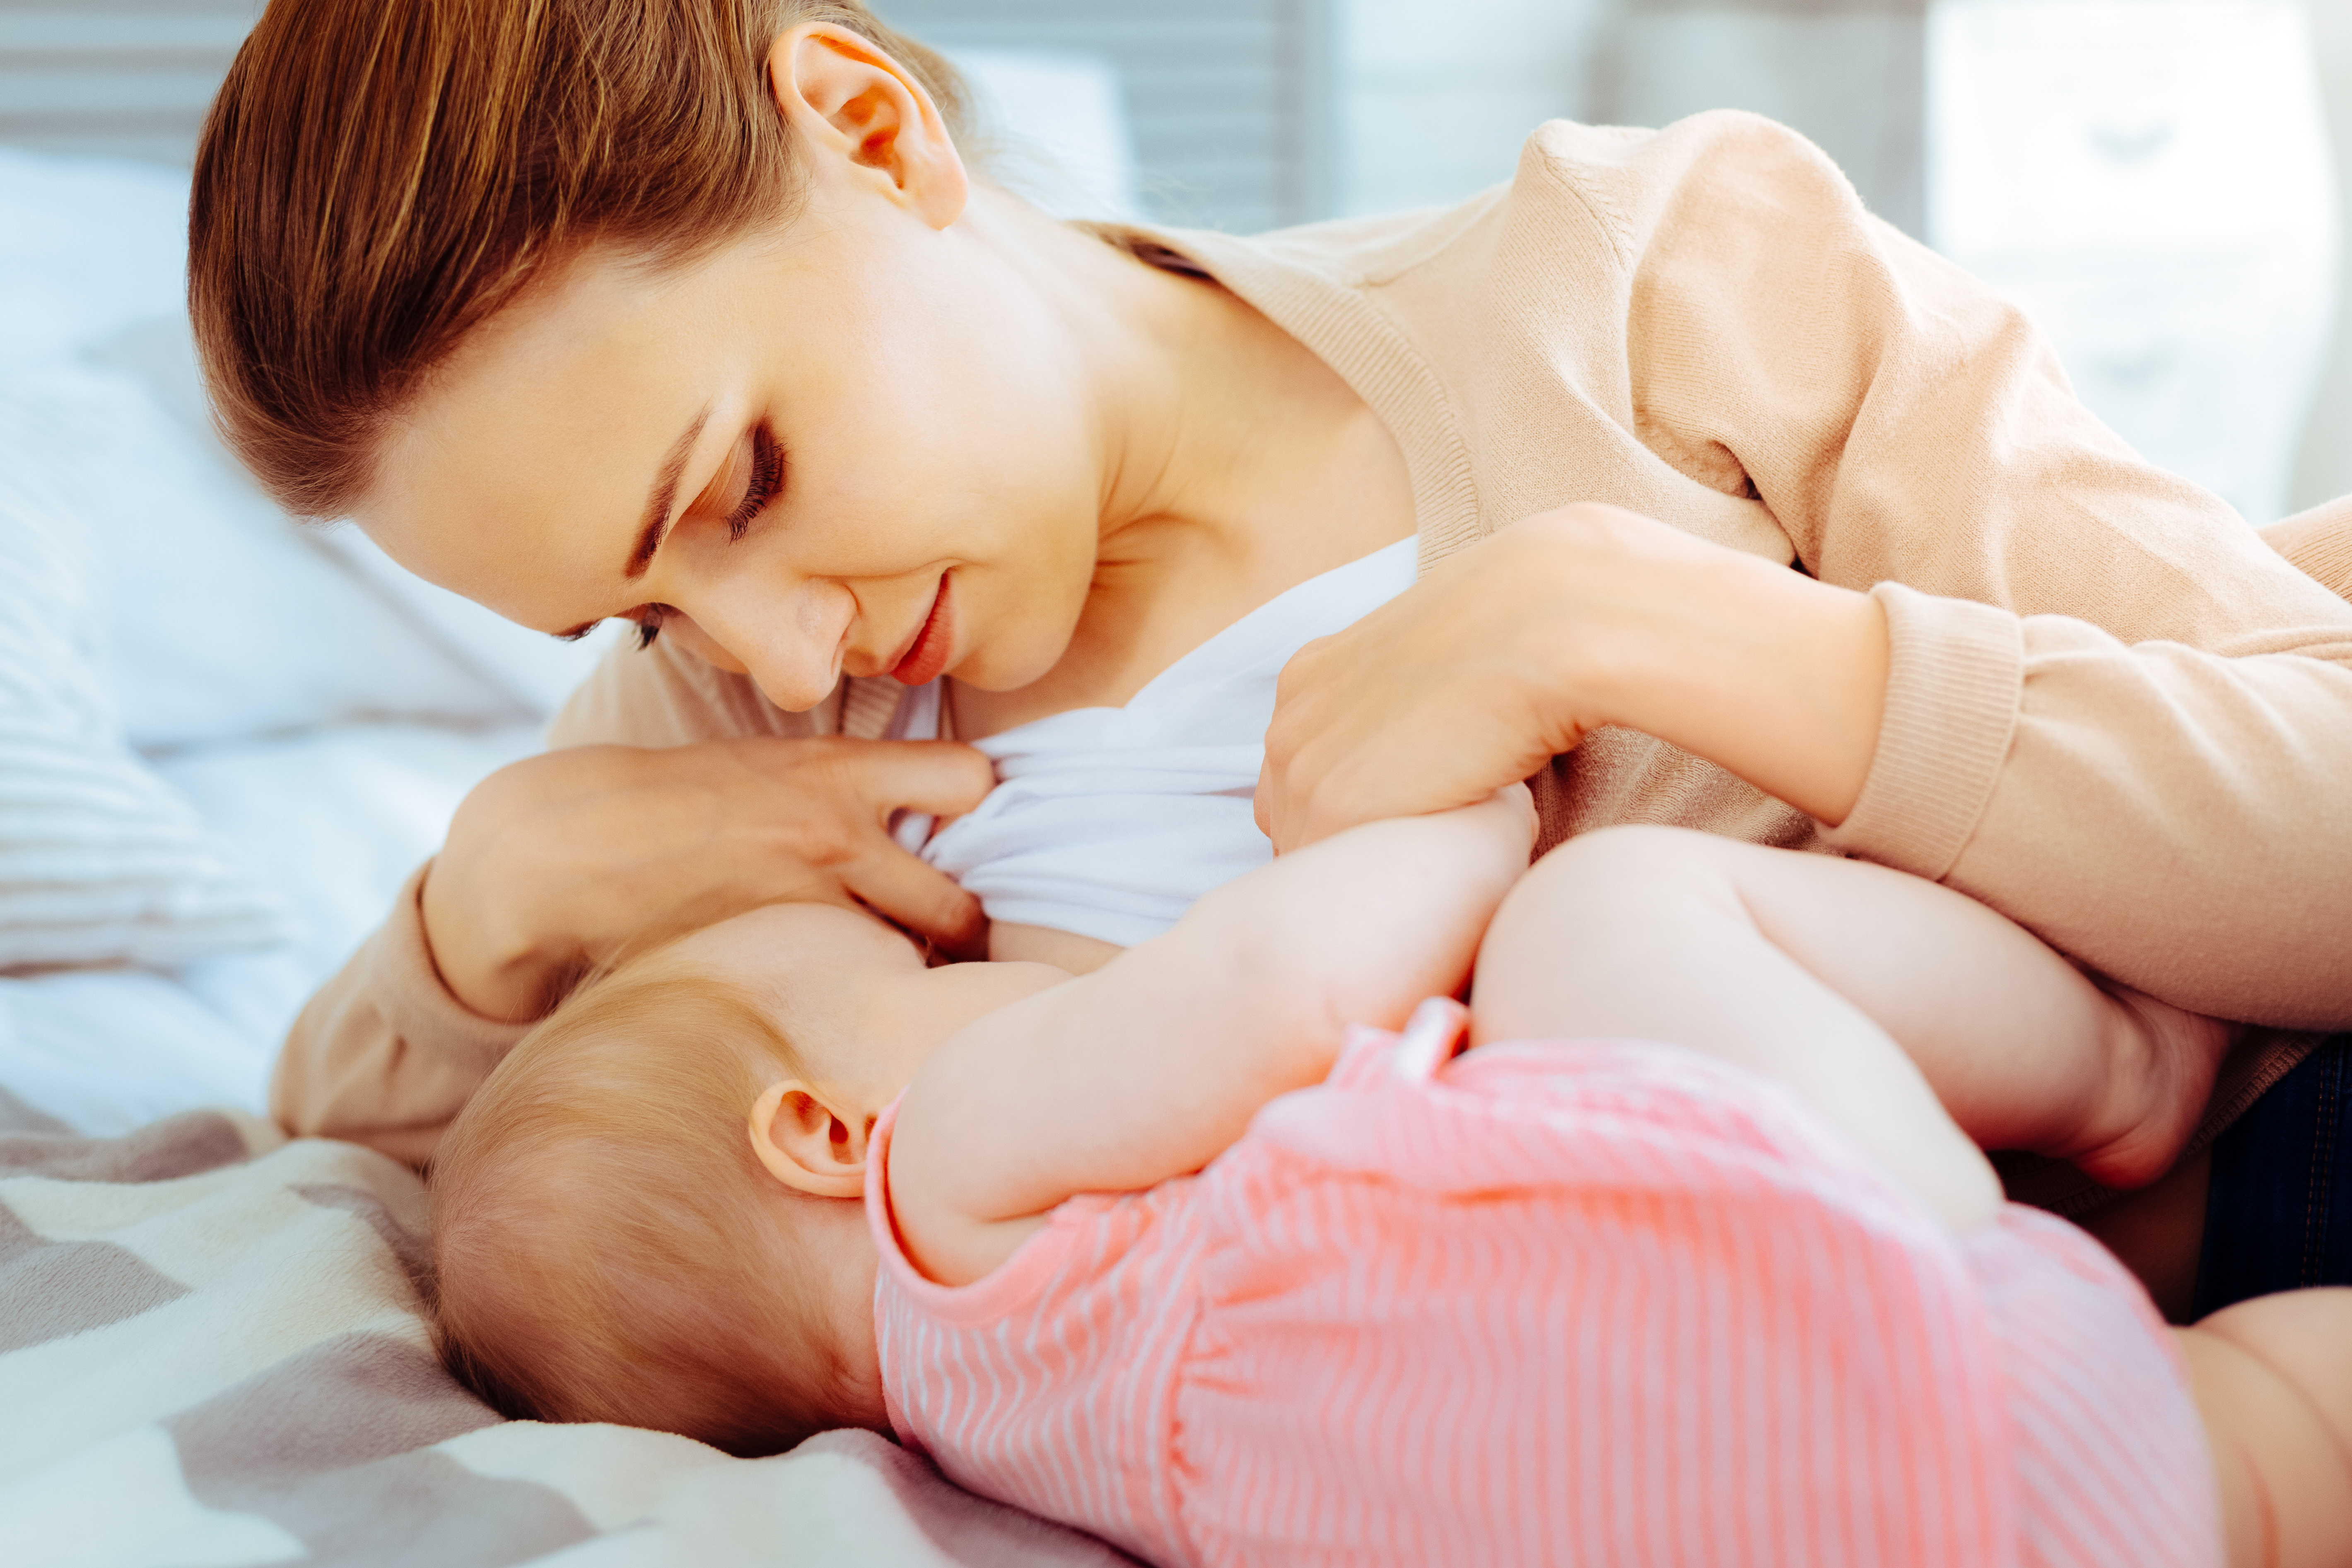 L'allaitement maternel permet de donner au bébé le lait maternel, unique, que le lait industriel ne remplace pas. Les bénéfices sont à la fois pour le bébé et la mère. © Viacheslav Iakobchuk, Adobe Stock